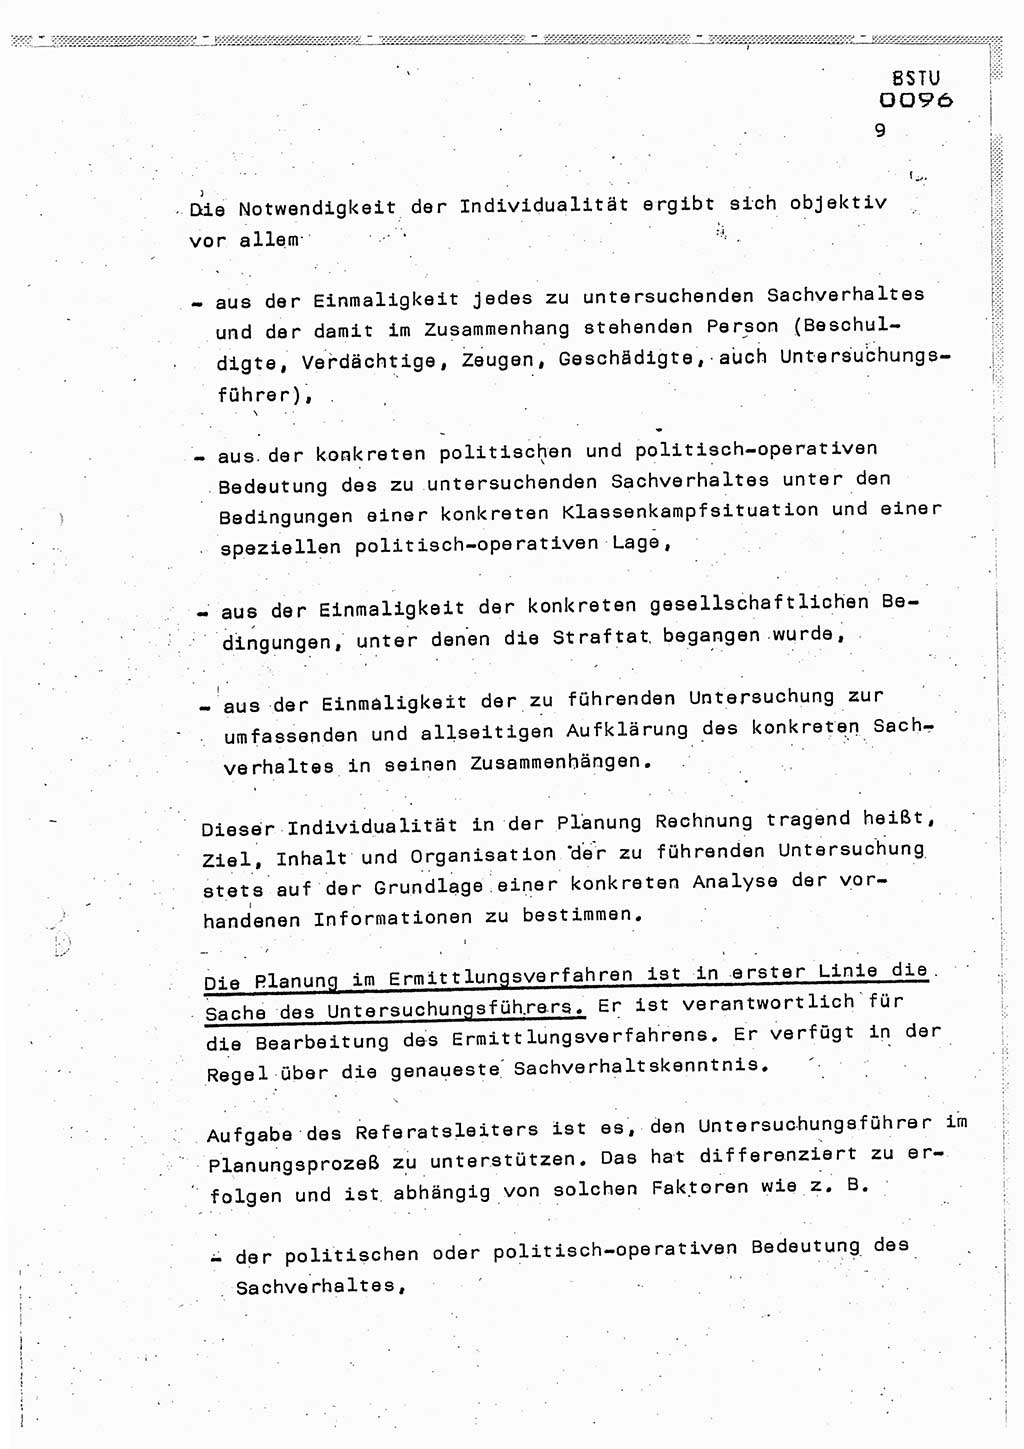 Lektion Ministerium für Staatssicherheit (MfS) [Deutsche Demokratische Republik (DDR)], Hauptabteilung (HA) Ⅸ, Berlin 1987, Seite 9 (Lekt. Pln. Bearb. EV MfS DDR HA Ⅸ /87 1987, S. 9)